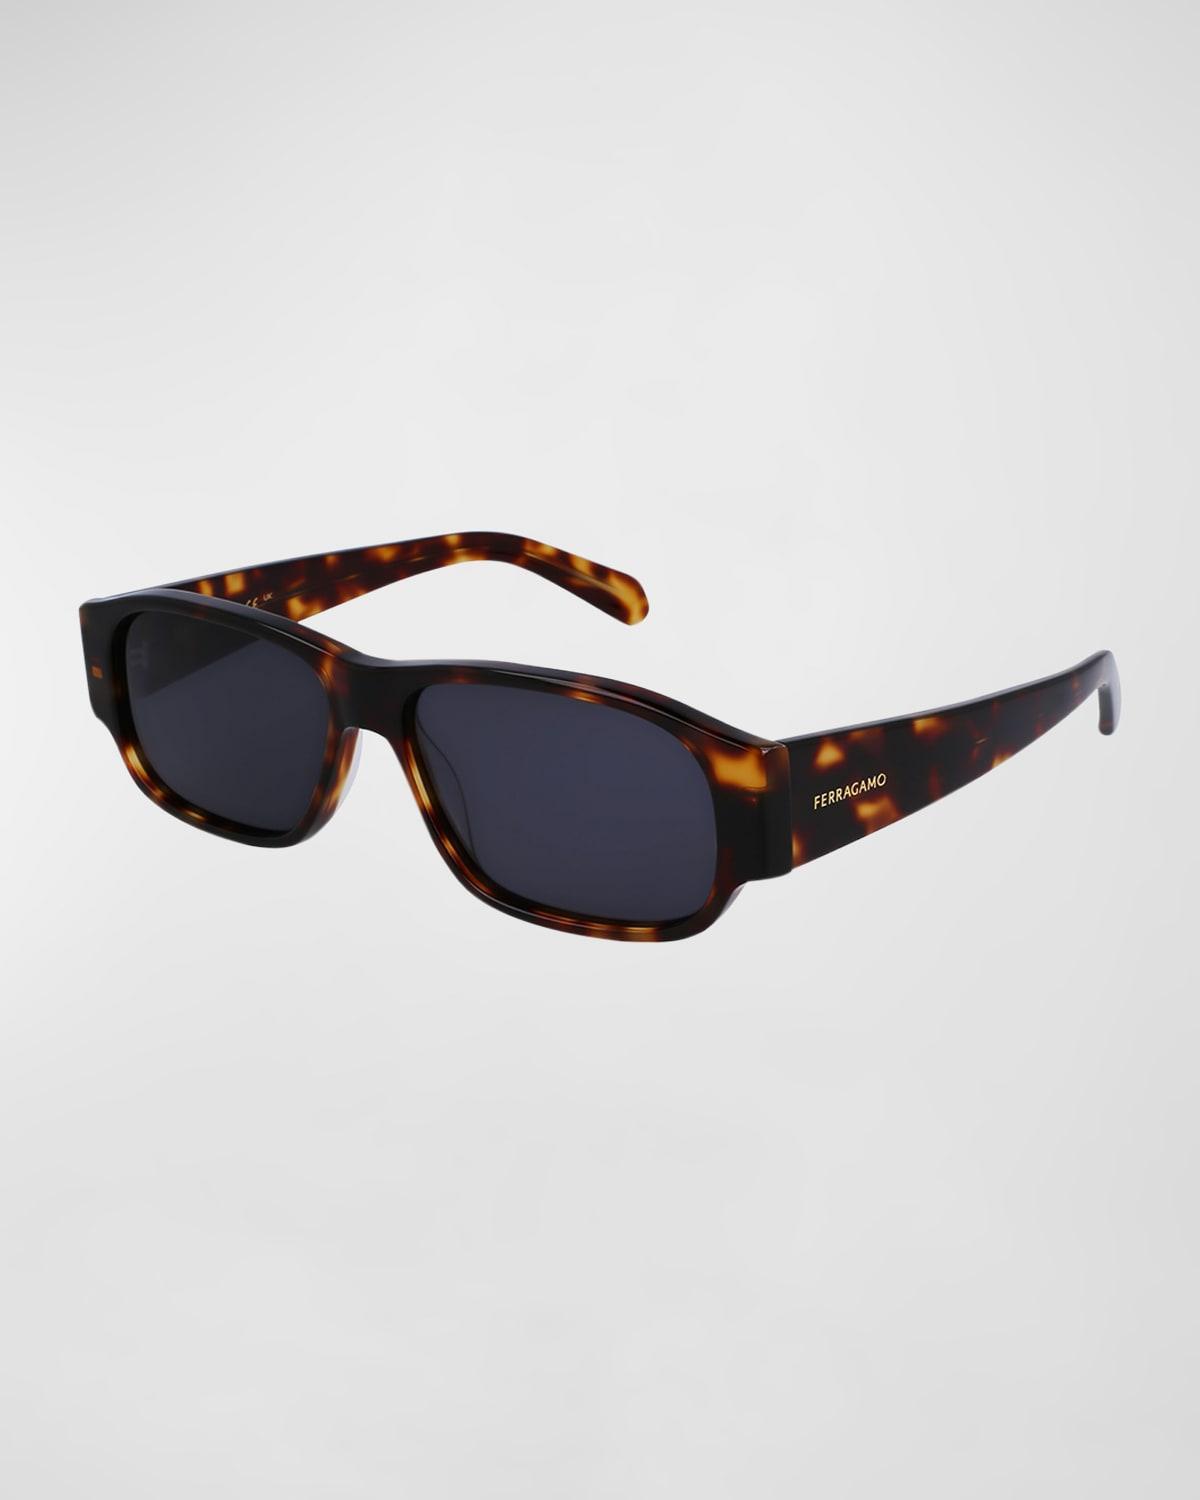 FERRAGAMO 57mm Rectangular Sunglasses Product Image